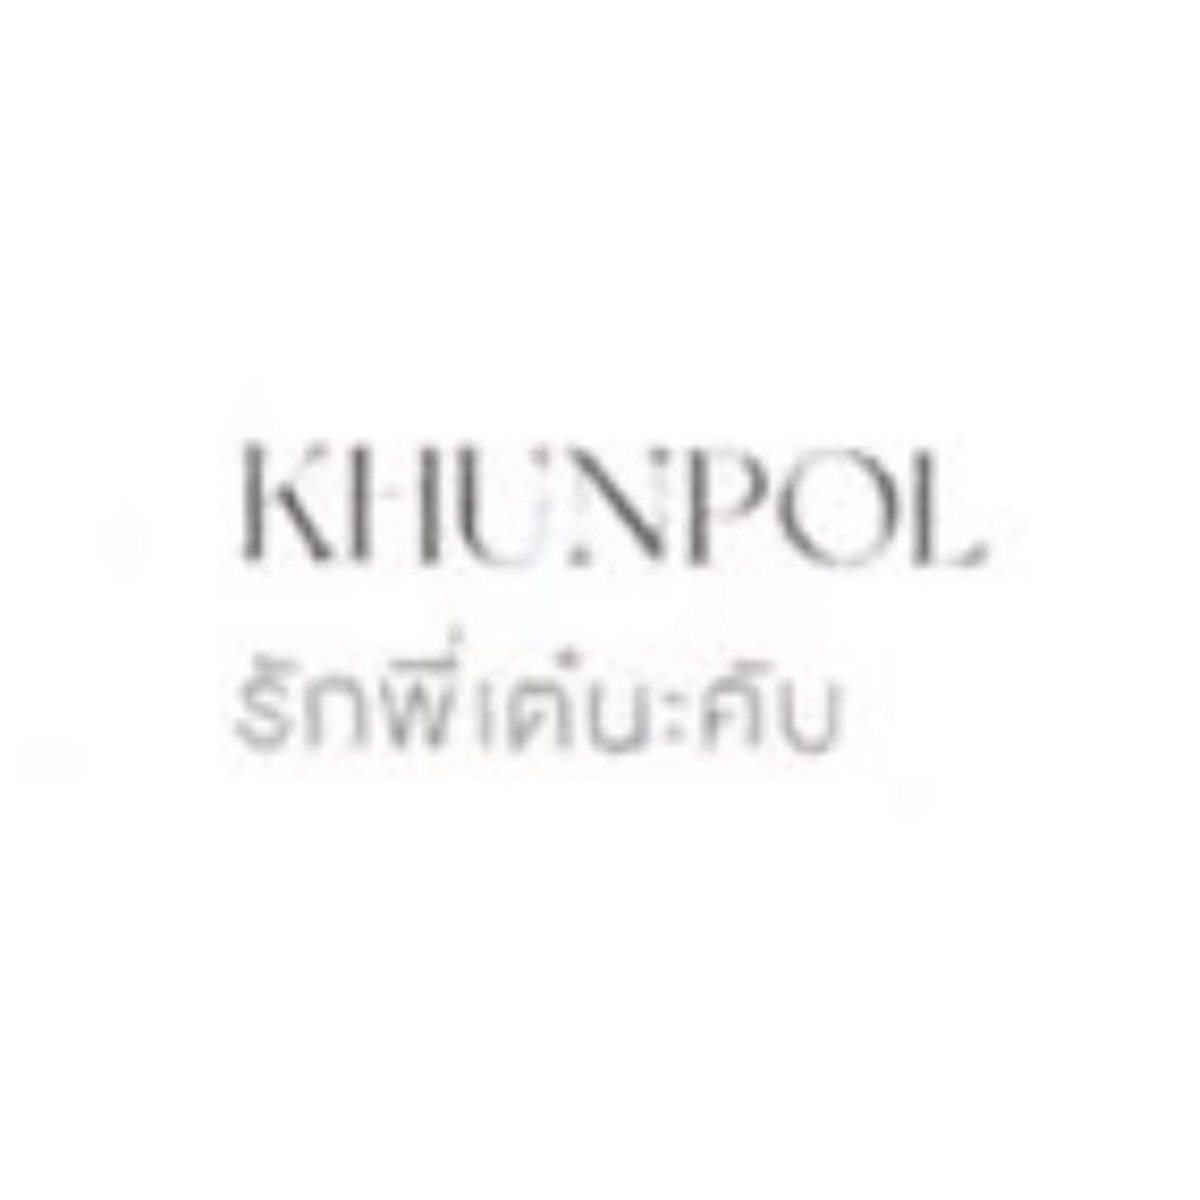 โฟโต้บุคเทมโป้ มีข้อความของ 789 brotherhood ด้วยคับ 

KHUNPOL : รักเต๋นะคับ 
((แต่ในคอนเรียกไอ่เต๋!!!! รักพี่แบบใด)) 🤣
#KHUNPOL